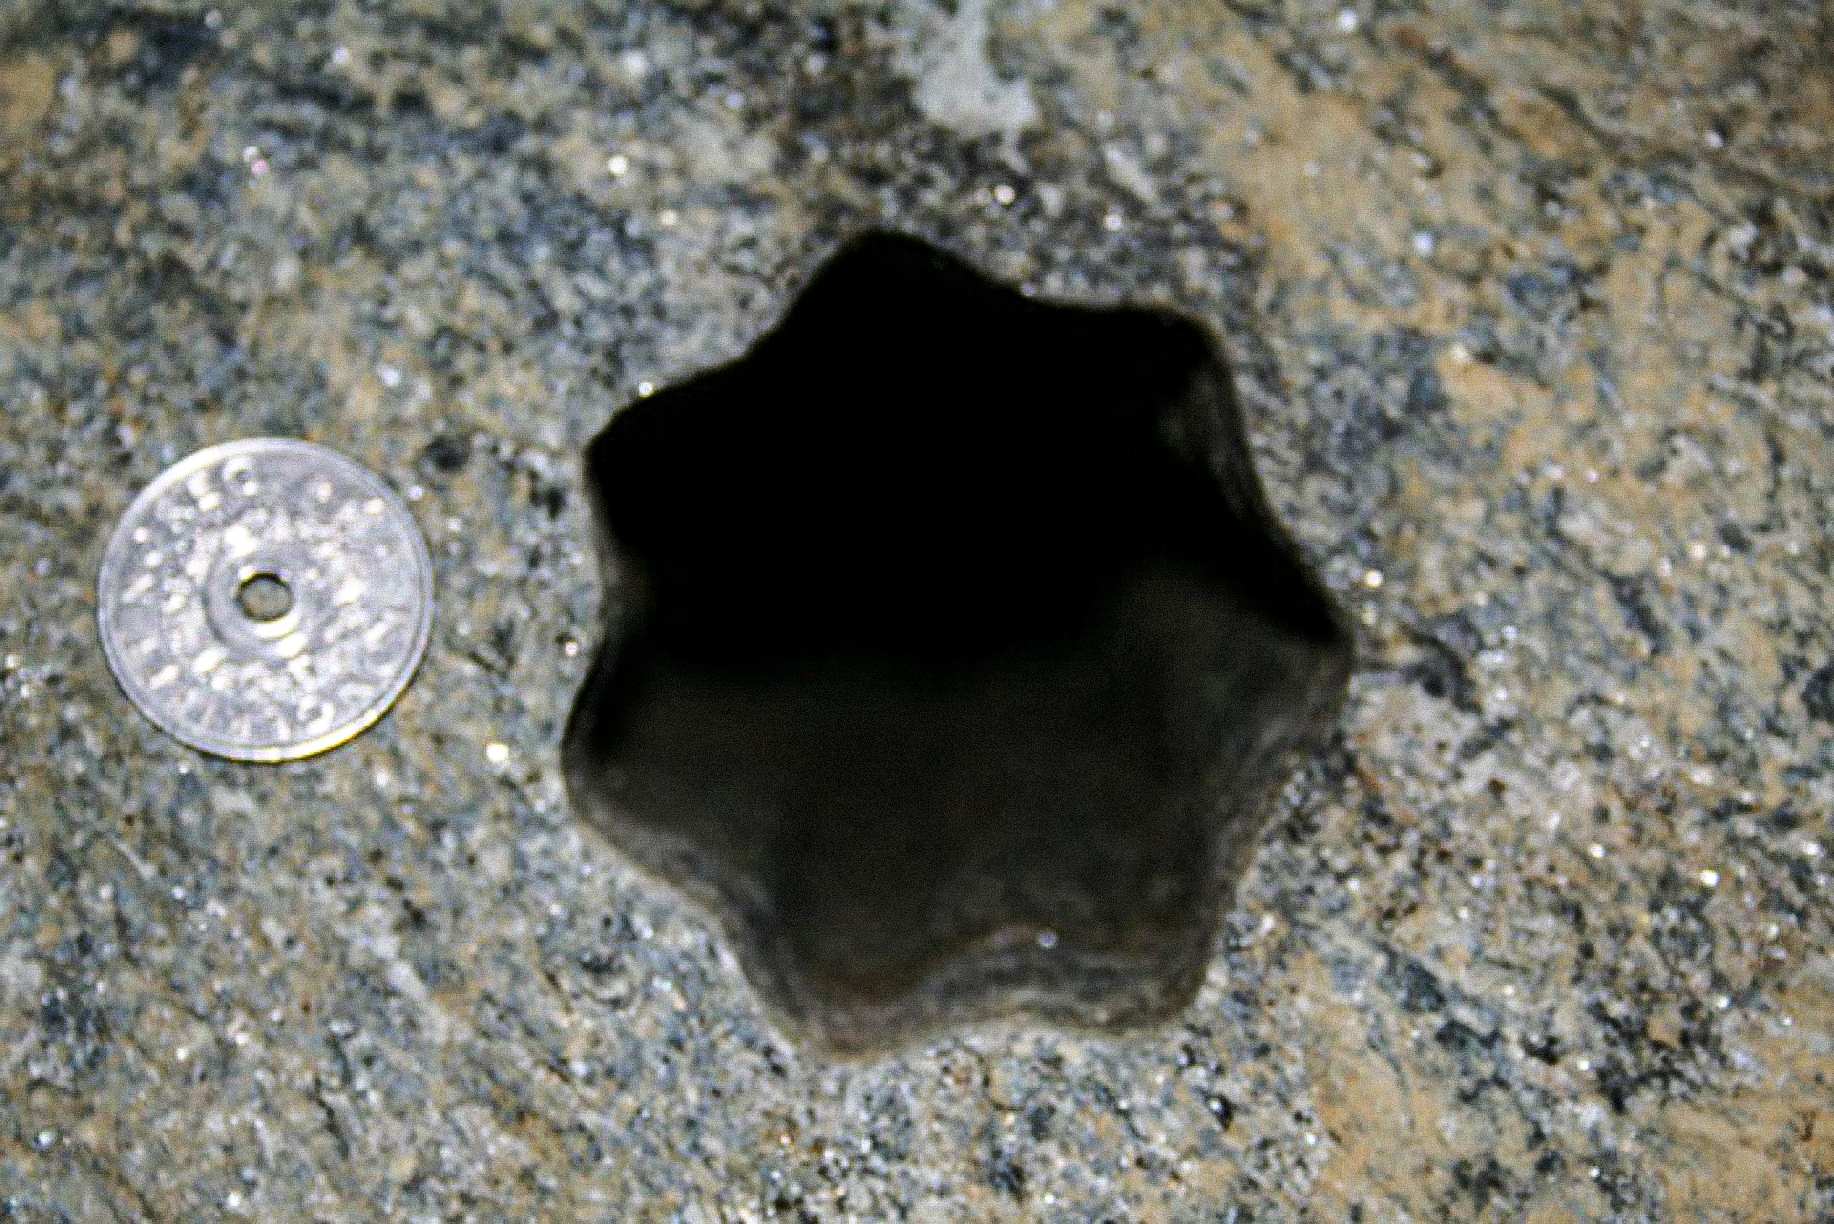 این سوراخ ستاره ای شکل (با هفت ضلع) توسط پیمانکاران در روز جمعه 30 نوامبر 2007 در ولدا، نروژ پیدا شد. سکه 5 کرون نروژی 25 میلی متر قطر دارد. قطر سوراخ تقریباً 65 تا 70 میلی متر است.